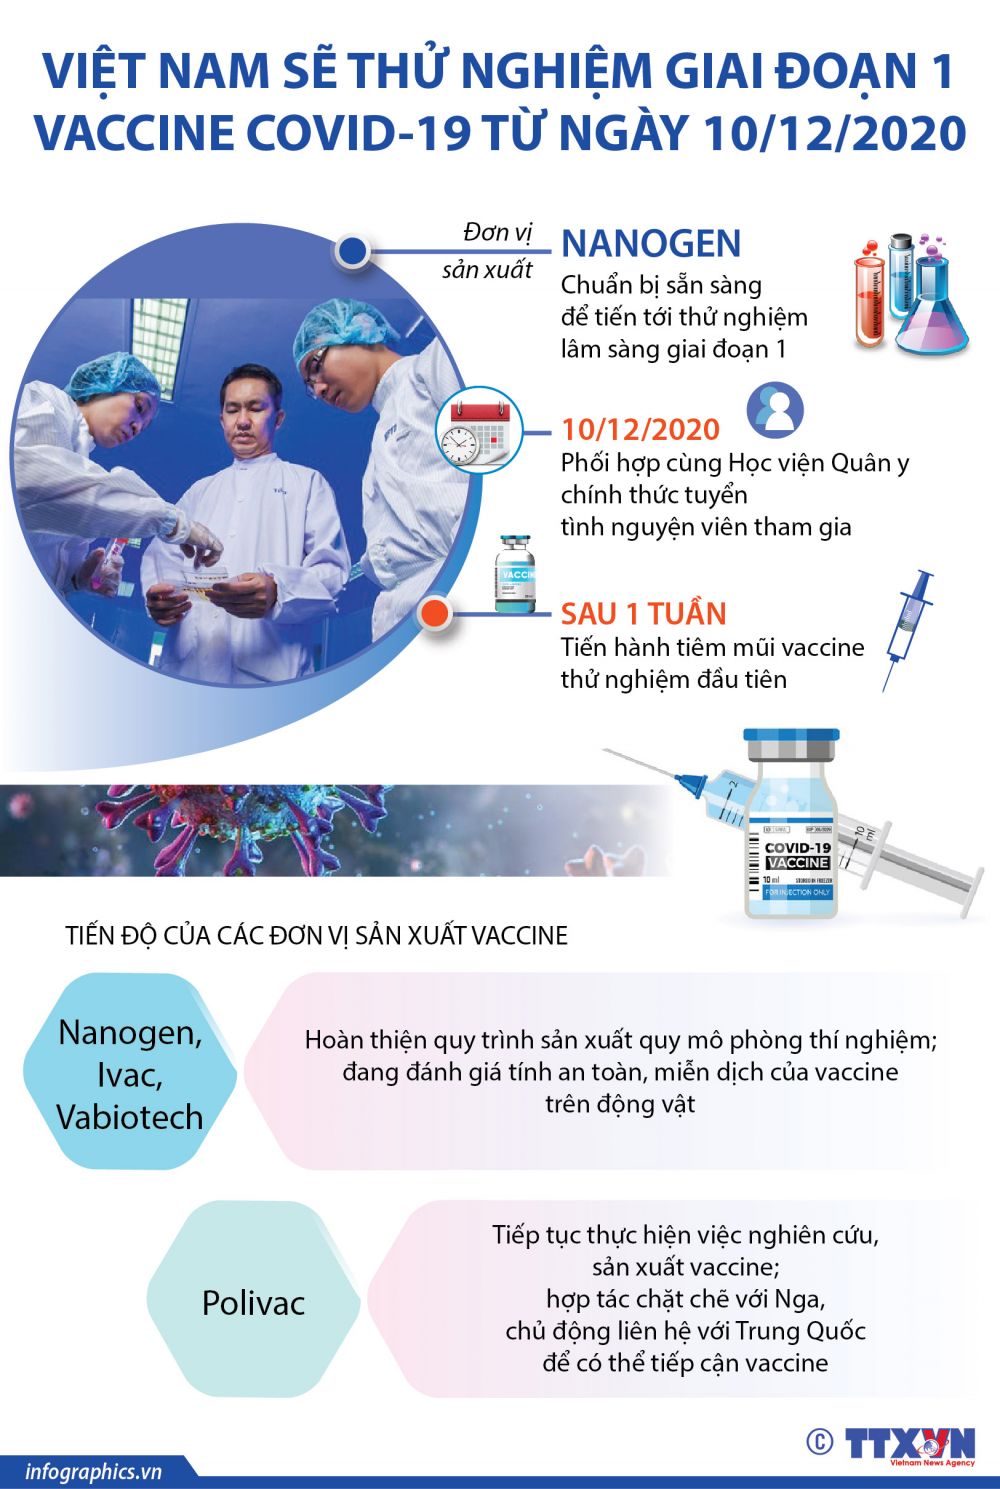 Việt Nam thử nghiệm giai đoạn 1 vaccine Covid-19 từ ngày 10/12